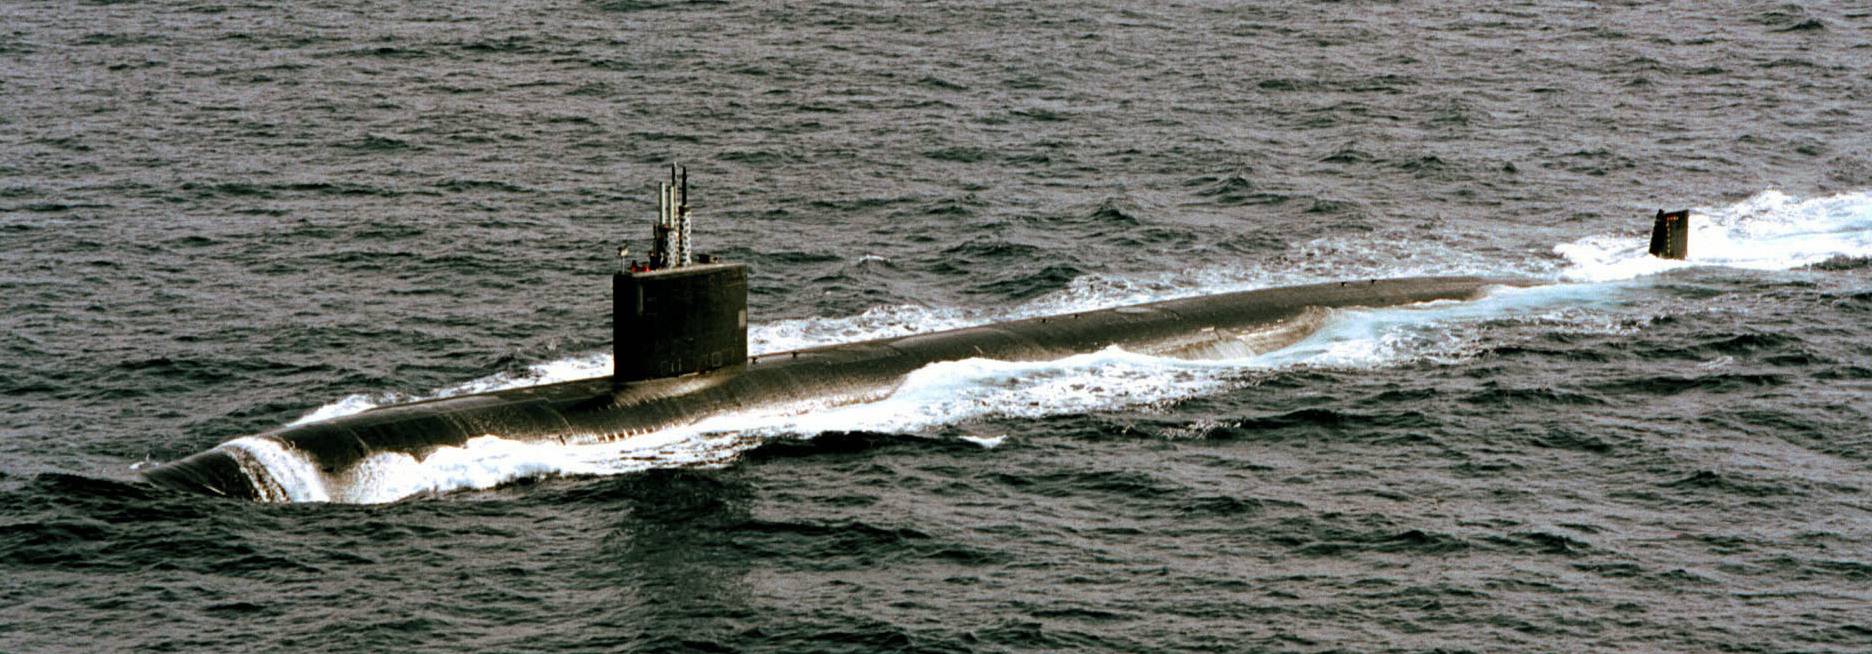 Атомная подводная лодка класса «Лос-Анджелес» USS ANNAPOLIS